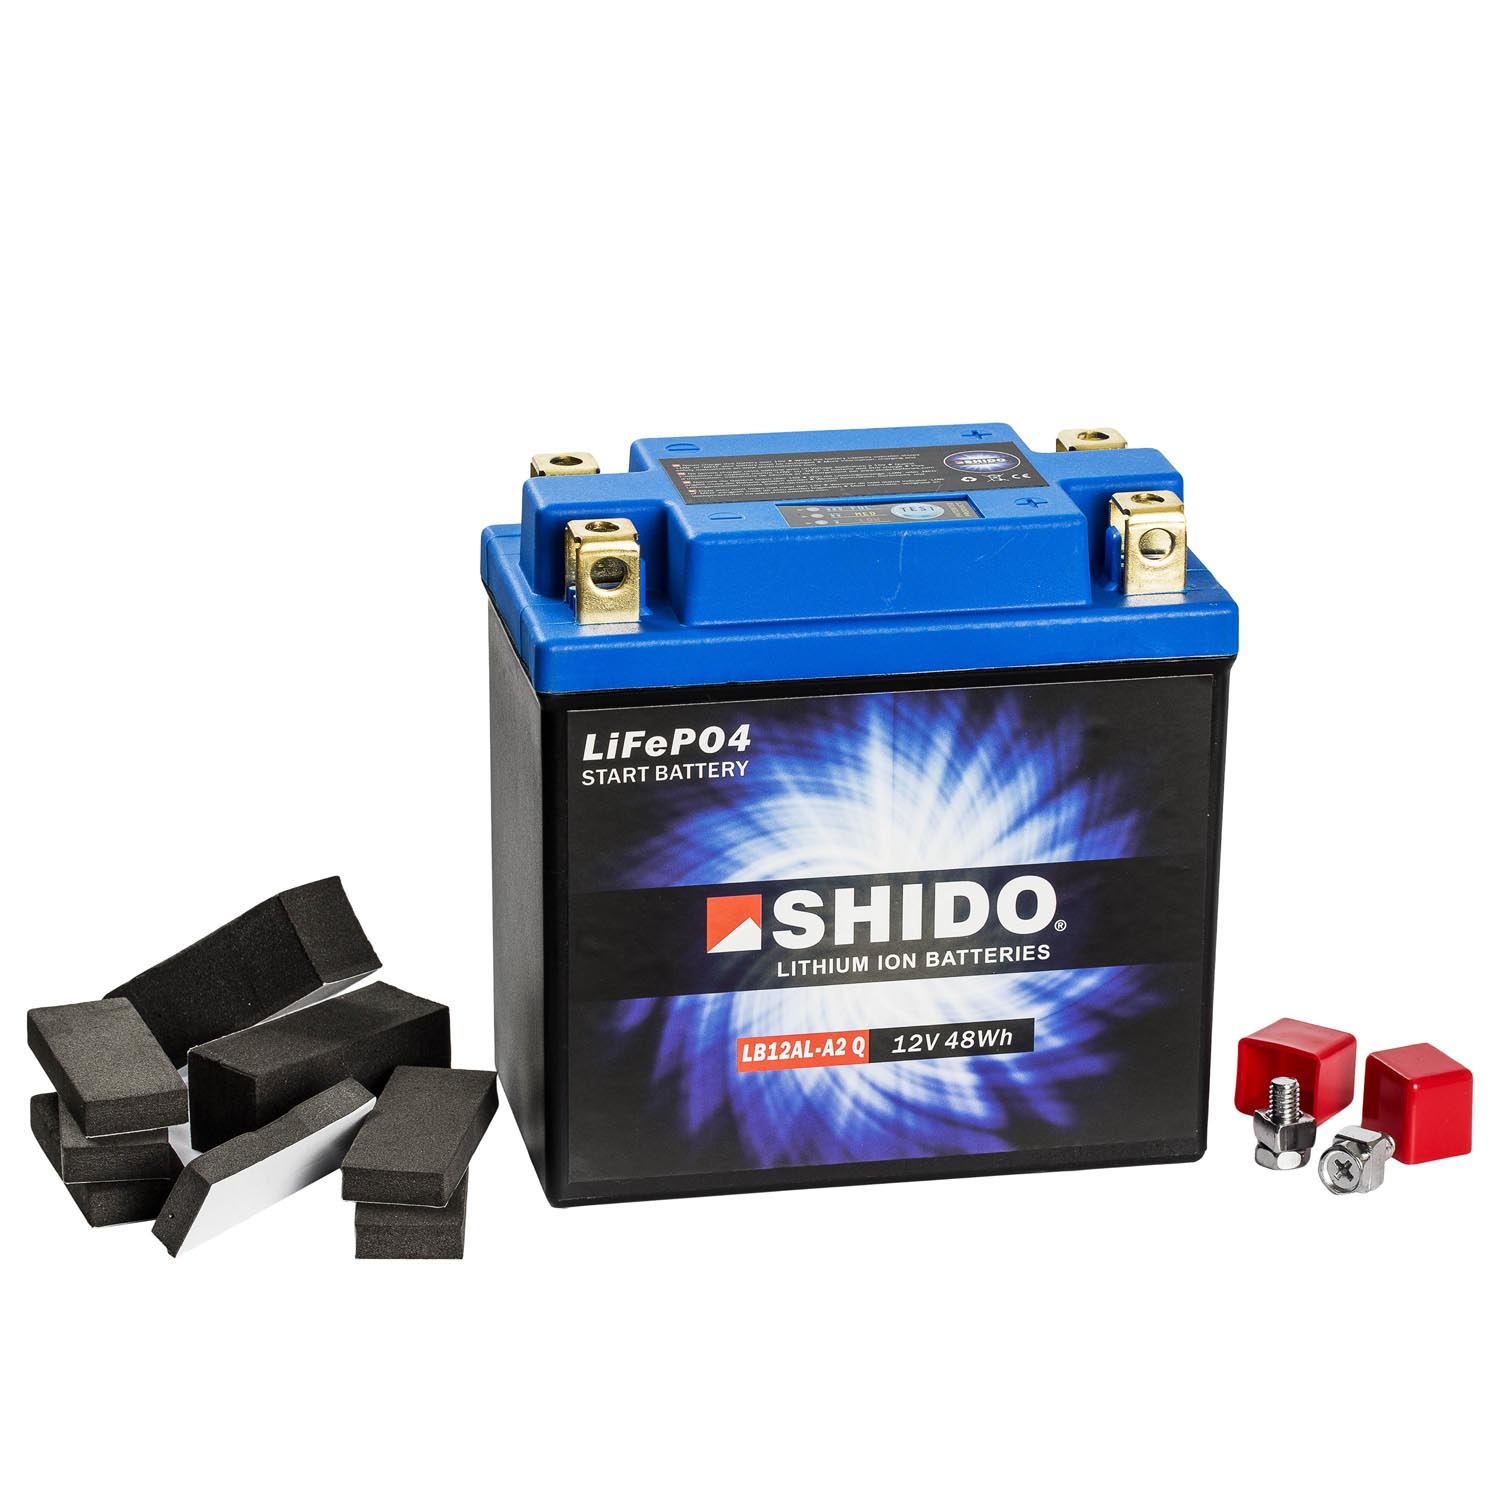 Shido Lithium Motorradbatterie LiFePO4 LB12AL-A2 Q 12V